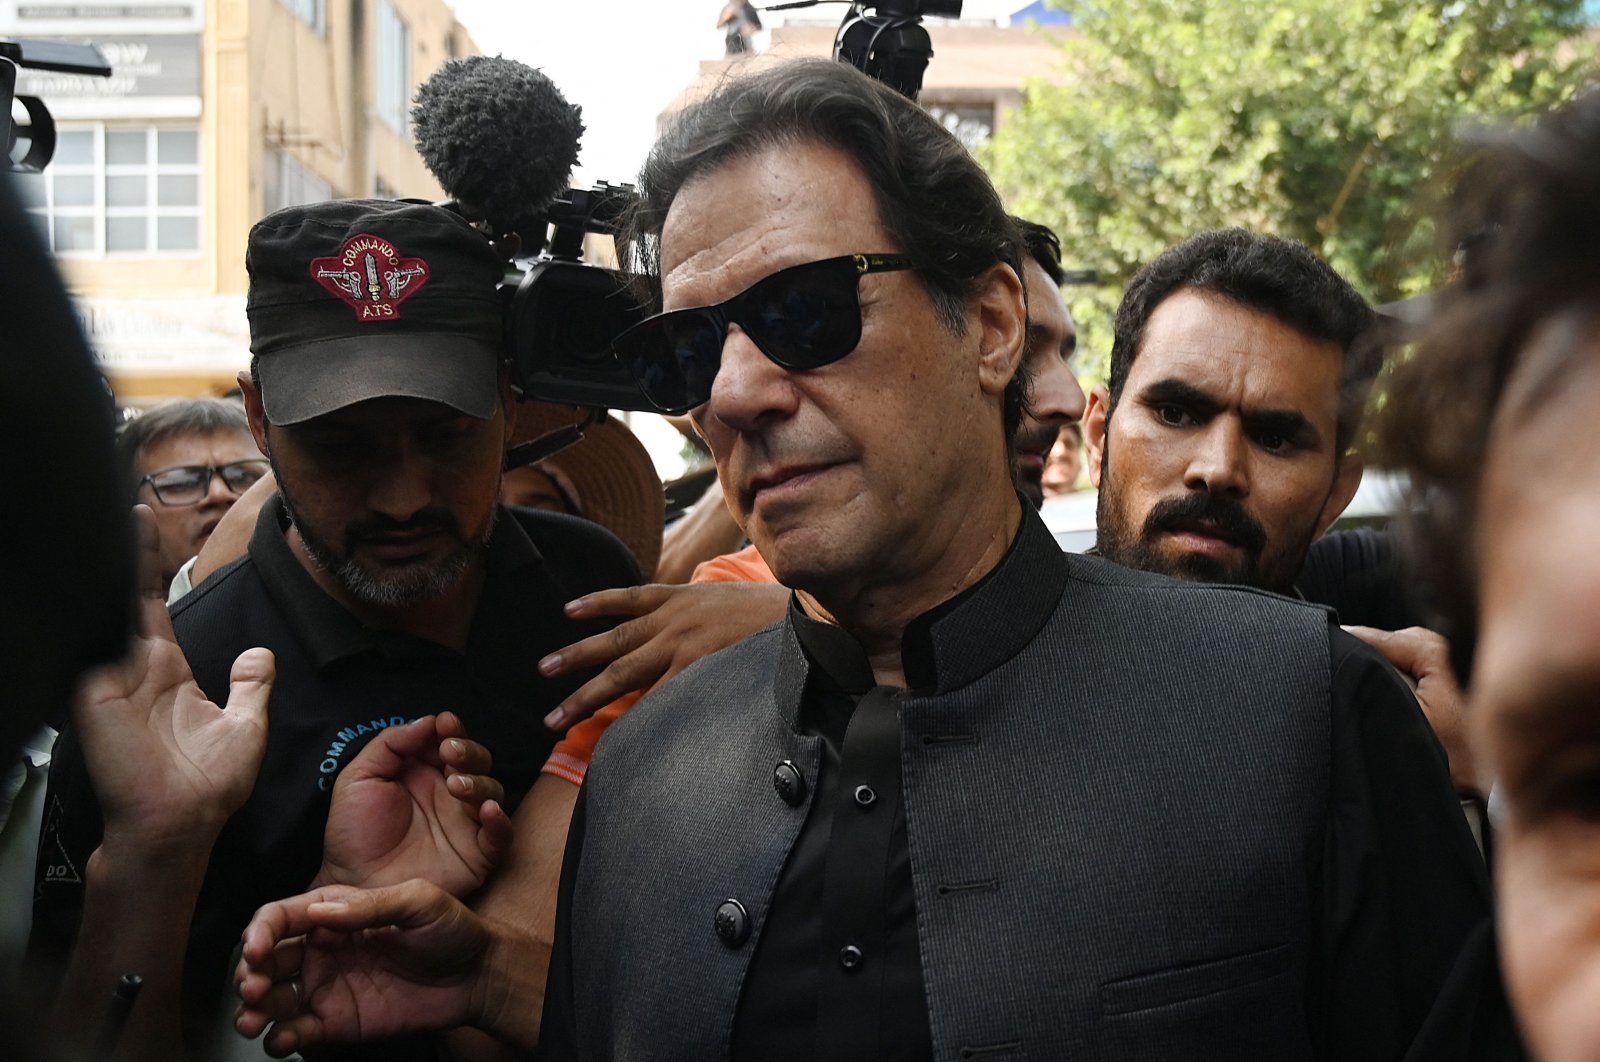 Mantan PM Pakistan Imran Khan meminta maaf karena menghina kasus pengadilan